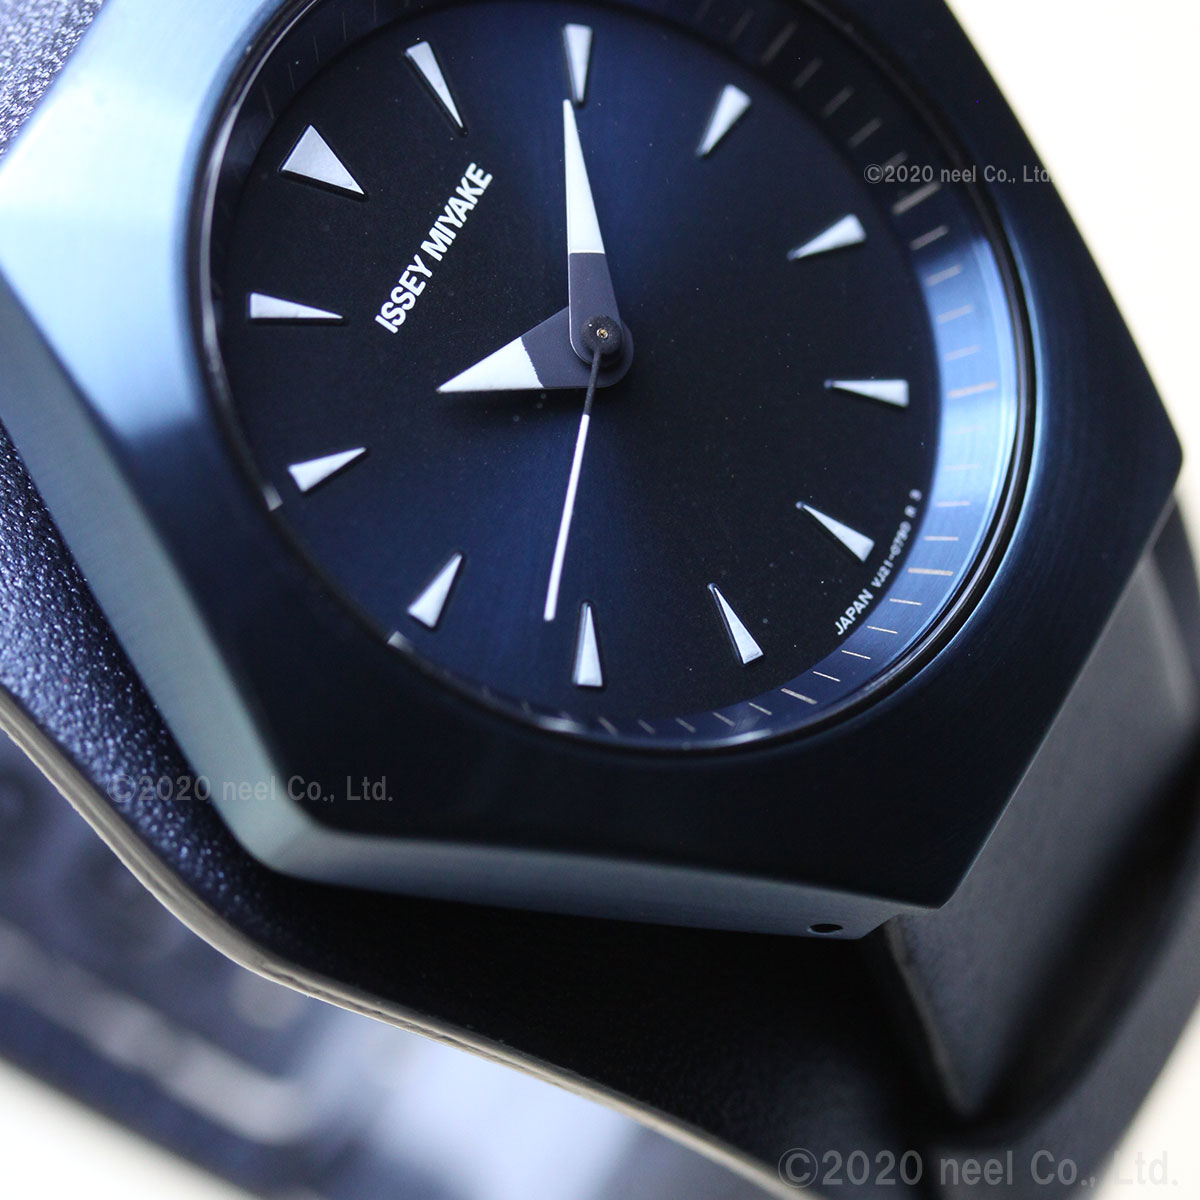 ISSEY MIYAKE 腕時計 メンズ NYAM702 ミヤケ ロクシリーズ クオーツ（VJ21） ブルーxブルー アナログ表示